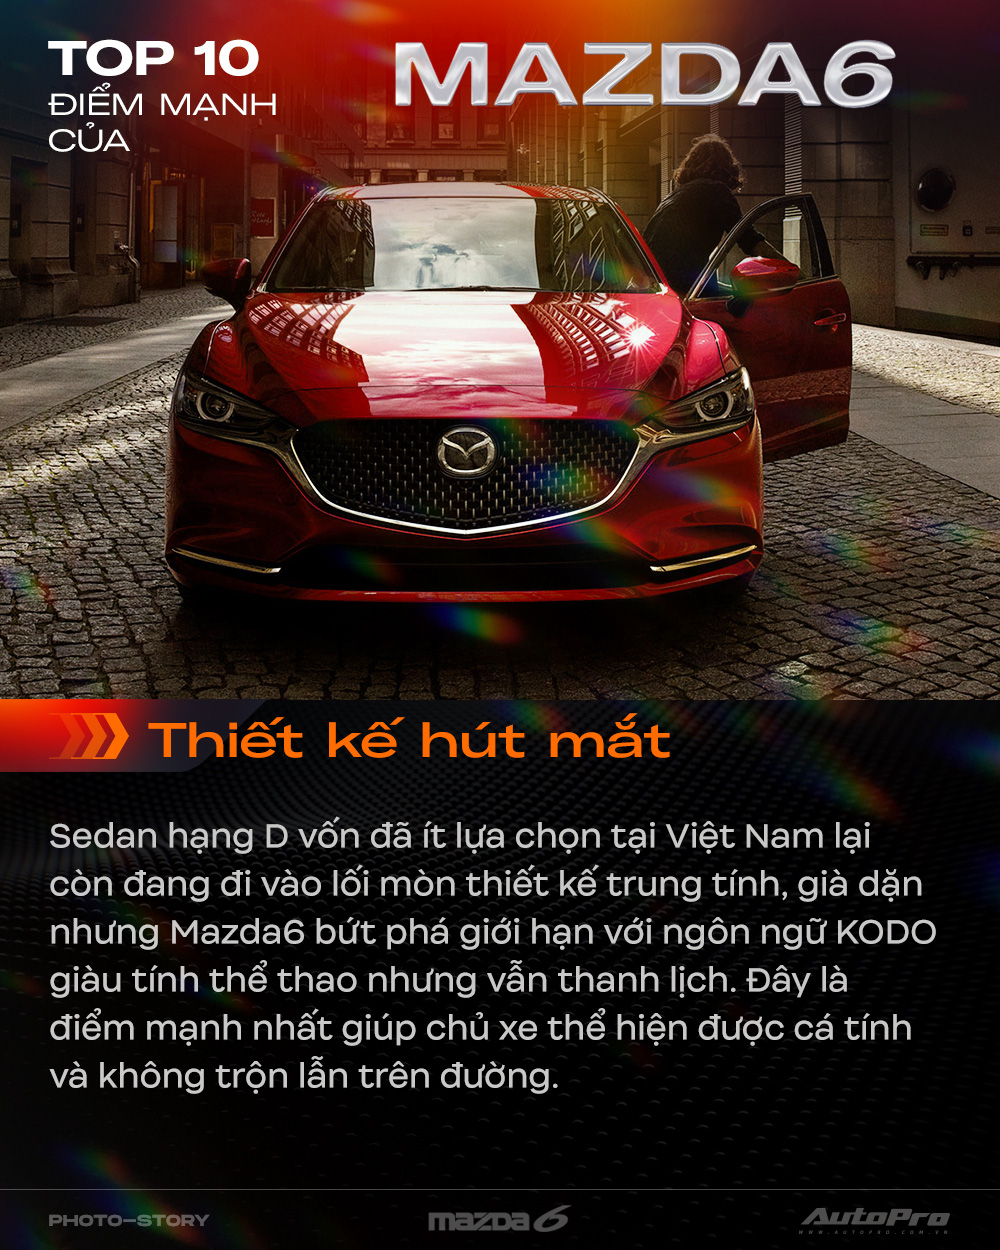 10 điểm giúp Mazda6 mới thuyết phục khách hàng Việt Nam - Ảnh 1.